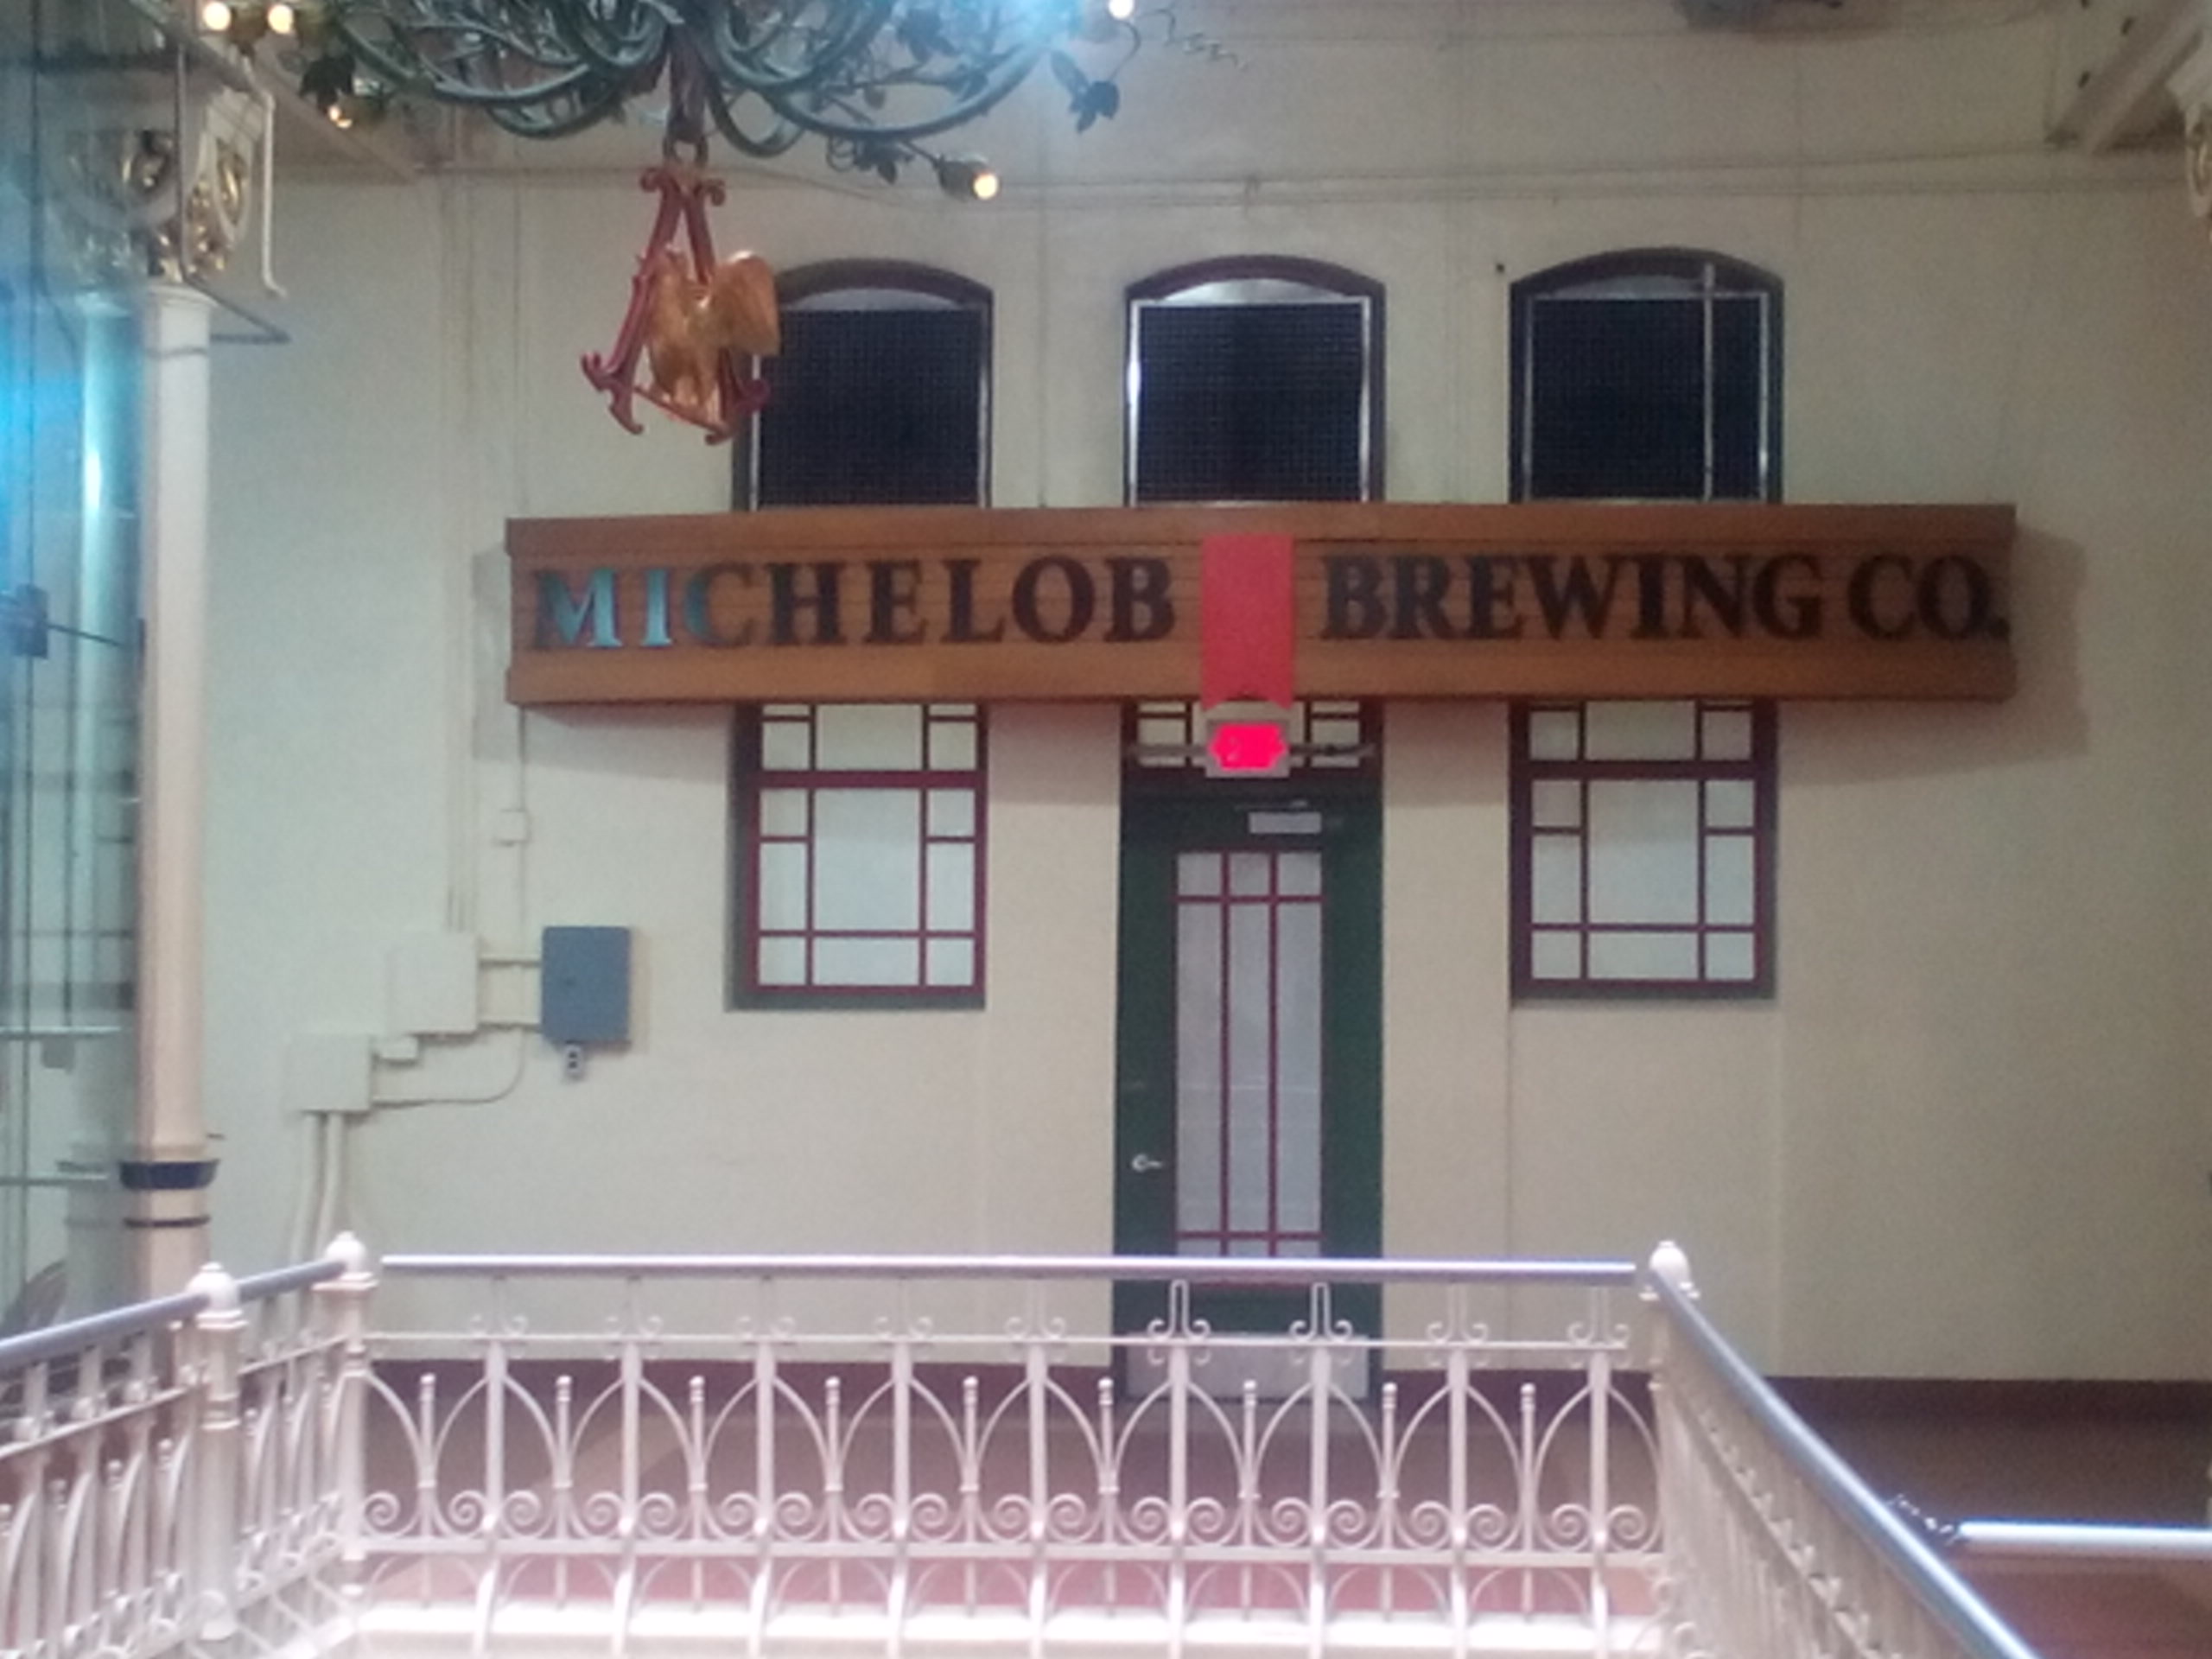 Anheuser-Busch Brewery